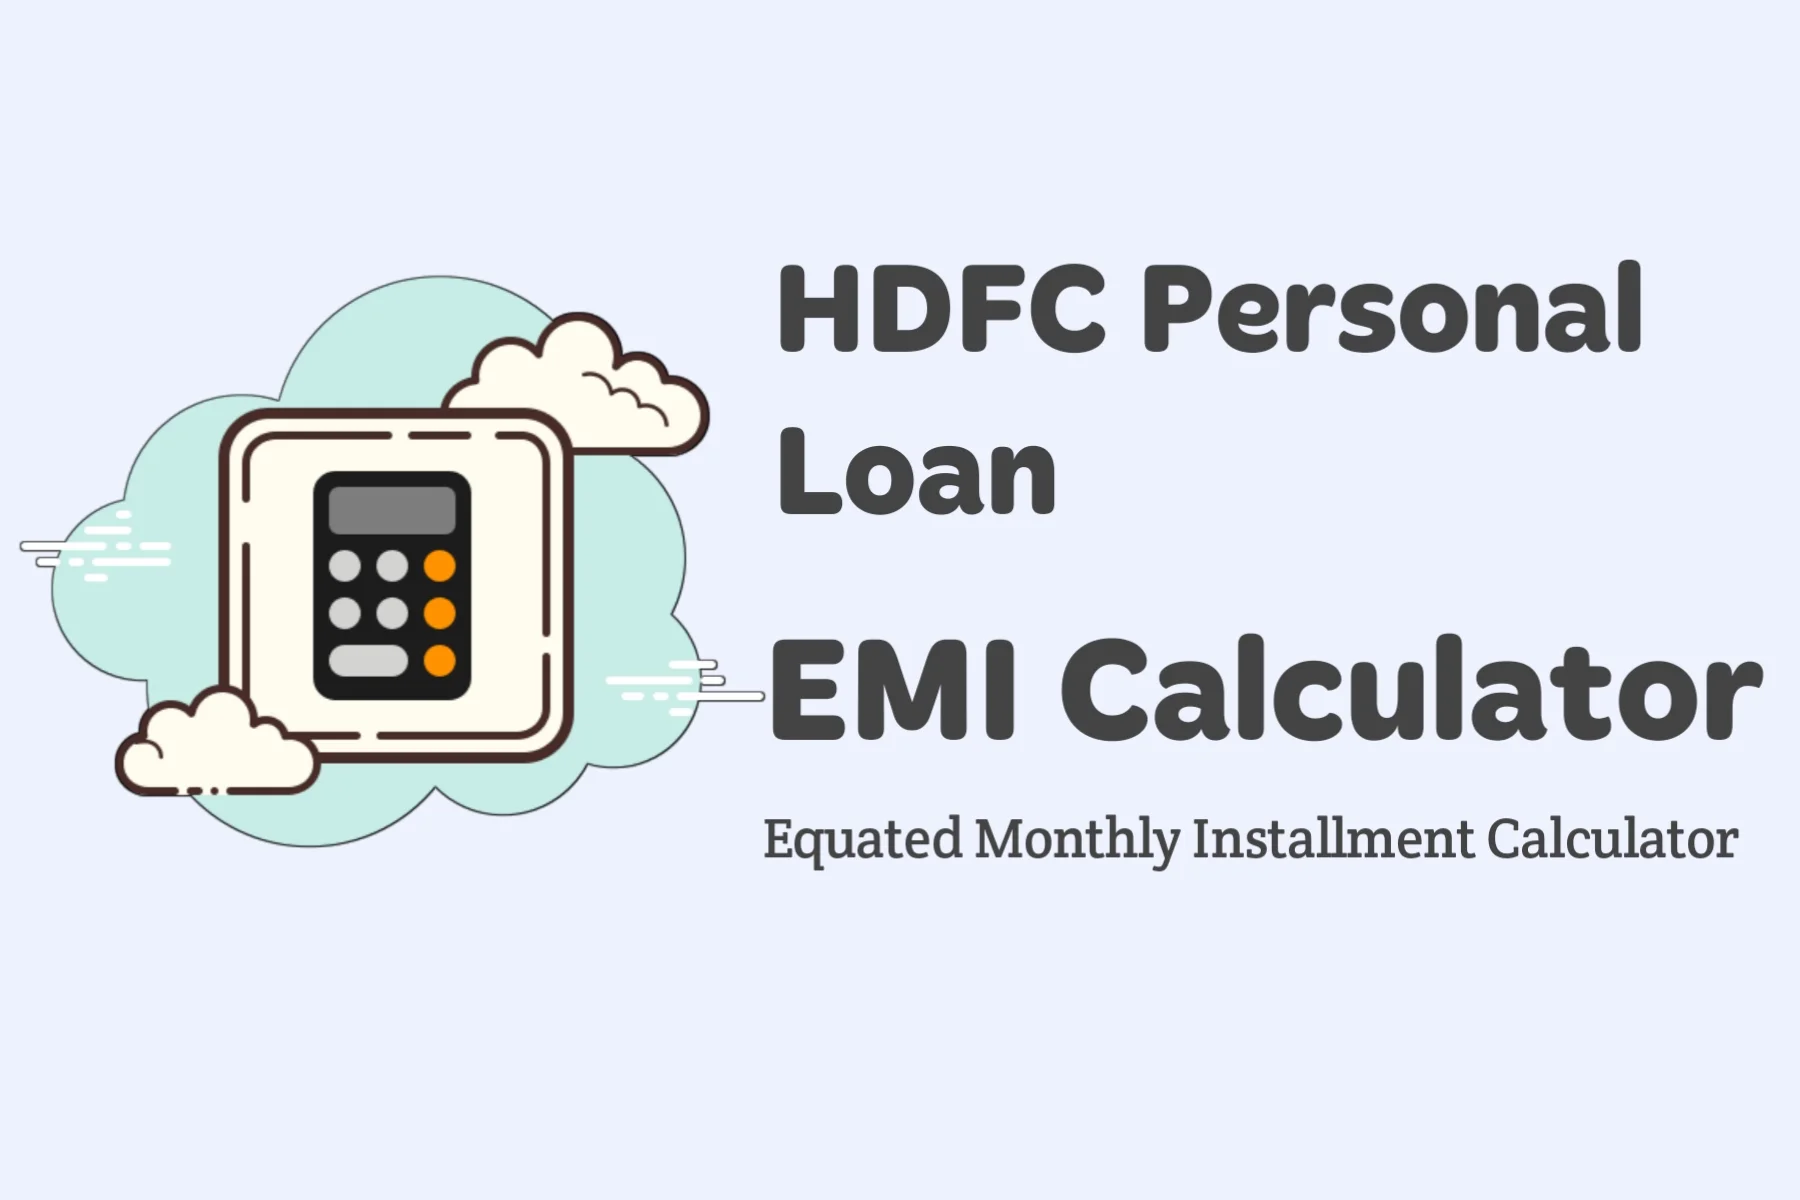 HDFC Personal Loan EMI Calculator